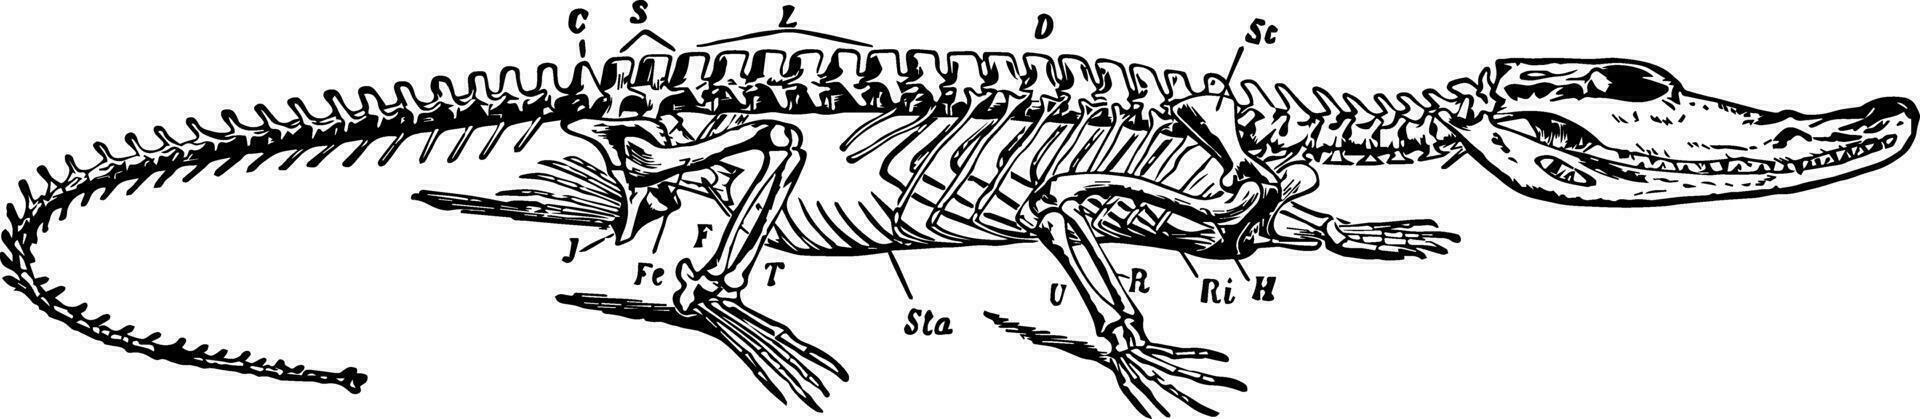 crocodile squelette, ancien illustration vecteur